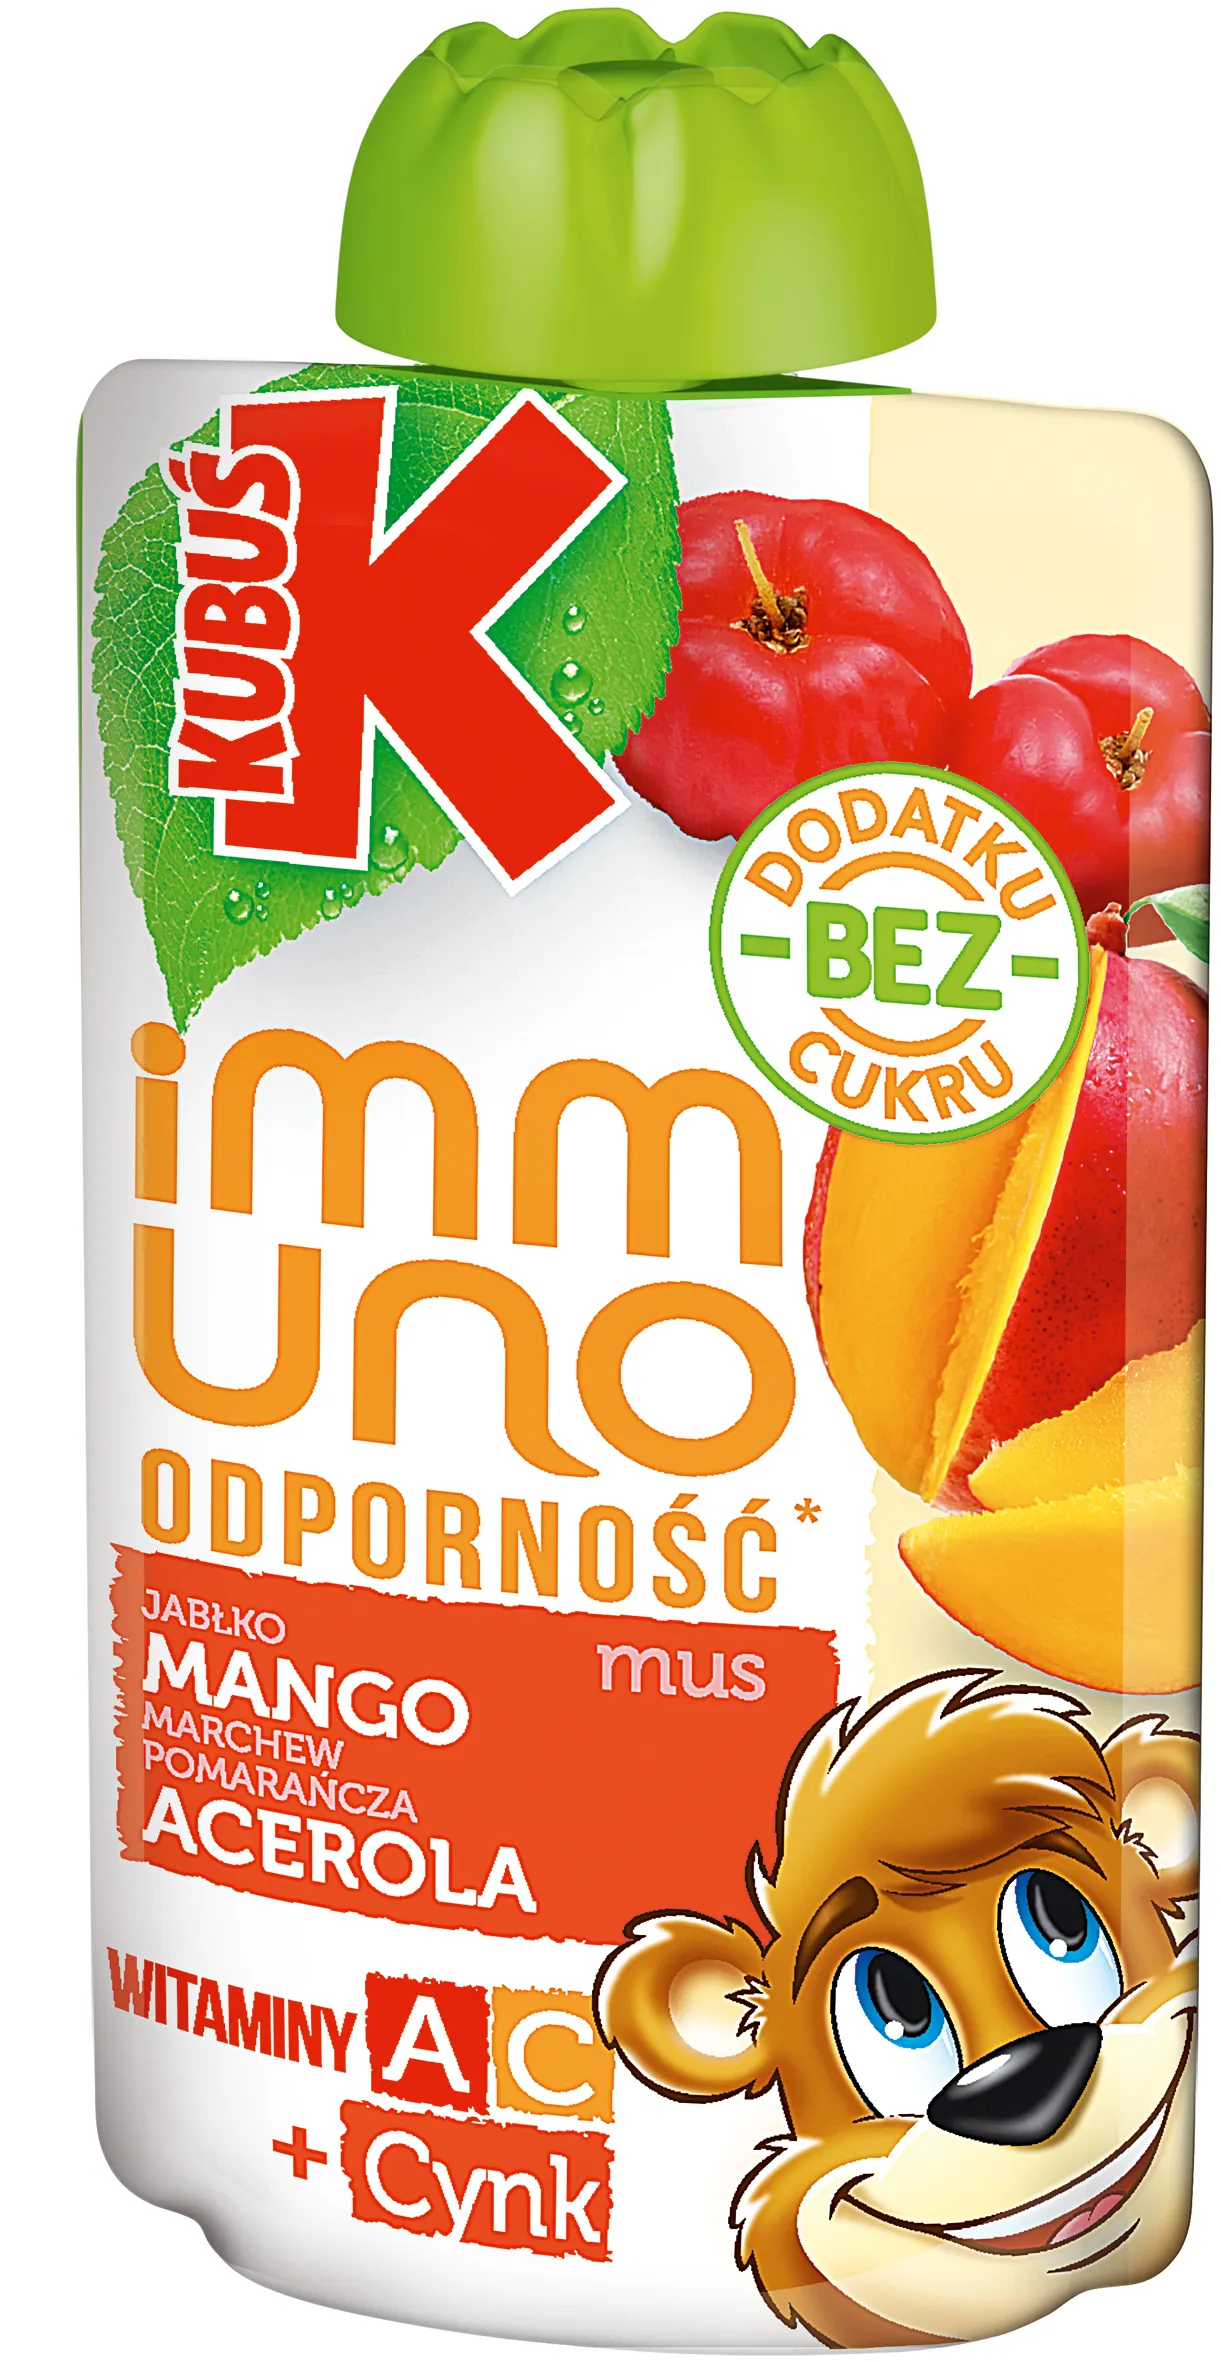 Kubuś Immuno Odporność Mus owocowy mango i acerola z witaminą C i cynkiem, 100 g